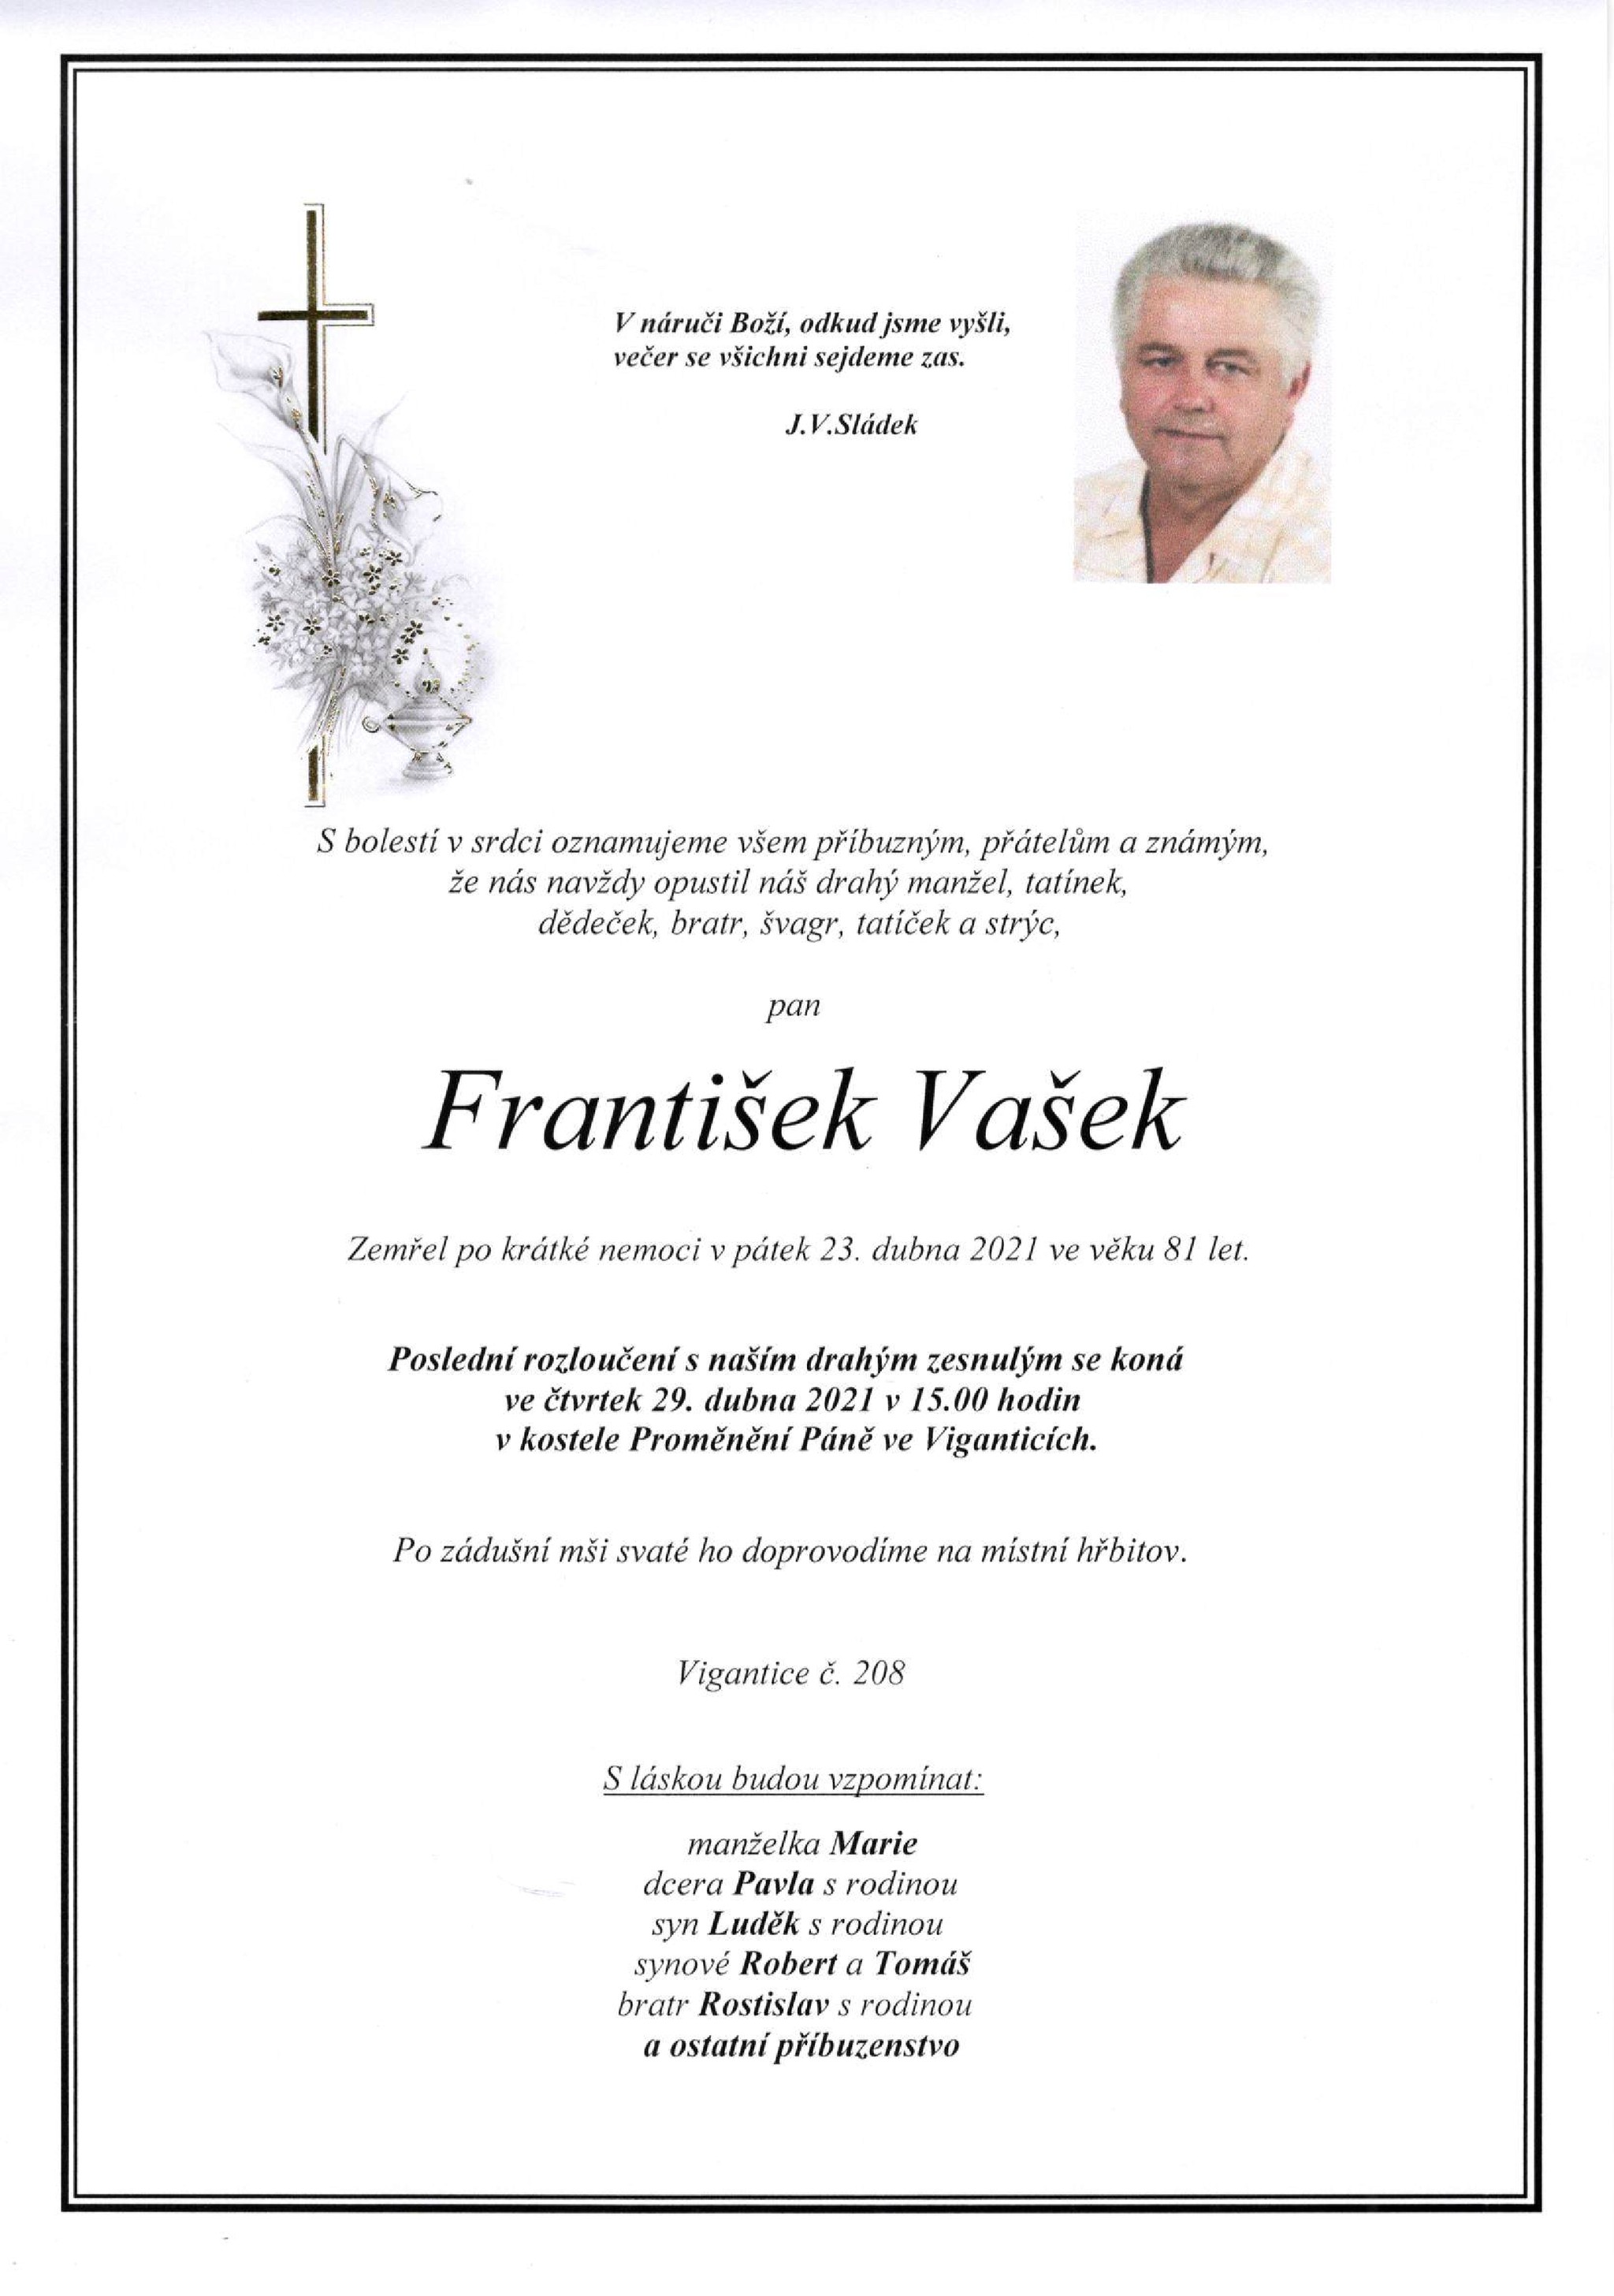 František Vašek